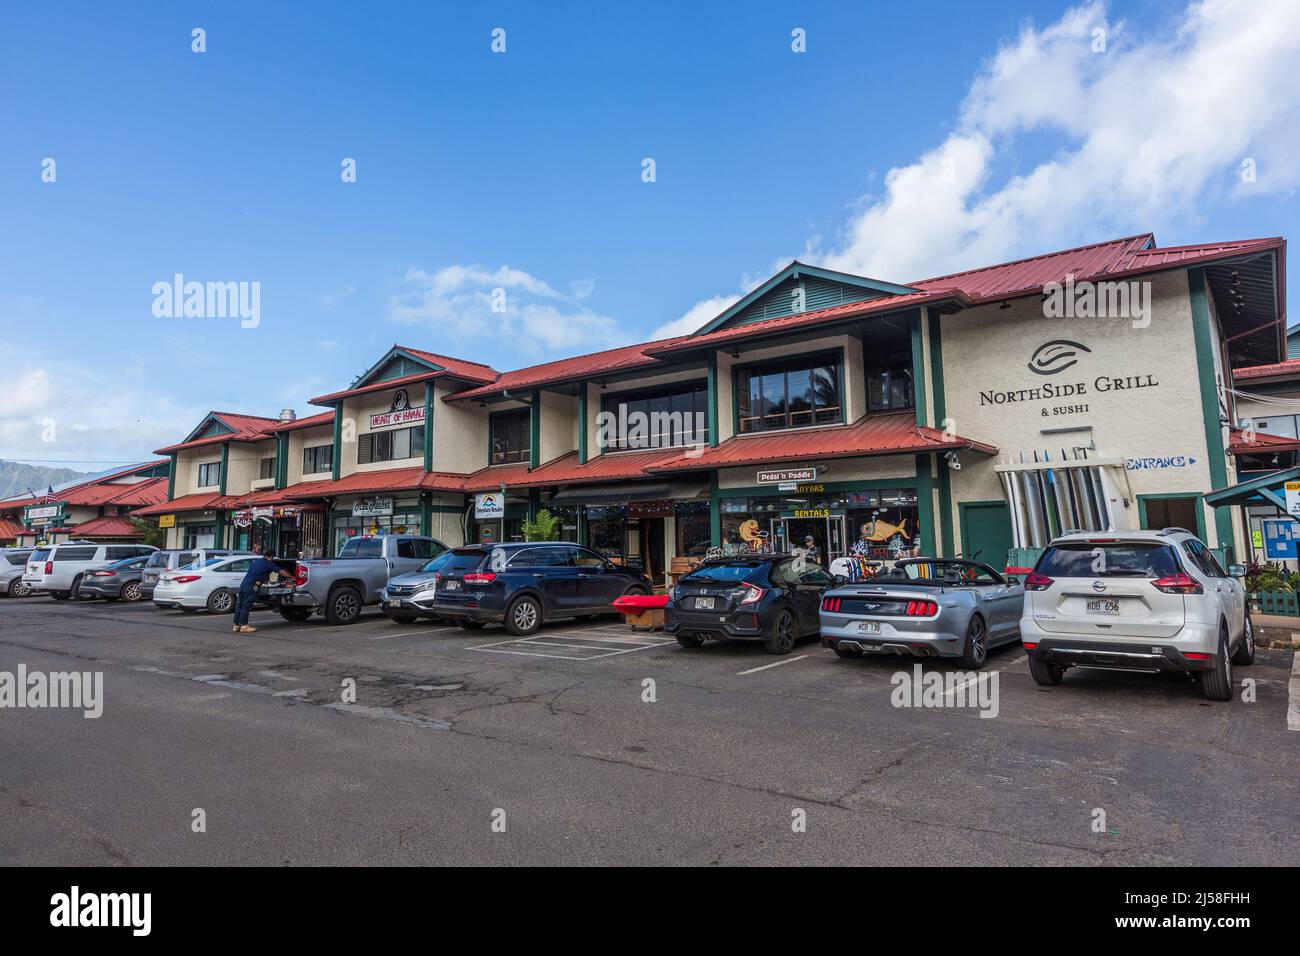 Restaurantes y tiendas turísticas en un centro comercial en Hanalei, Kauai, Hawaii. Foto de stock